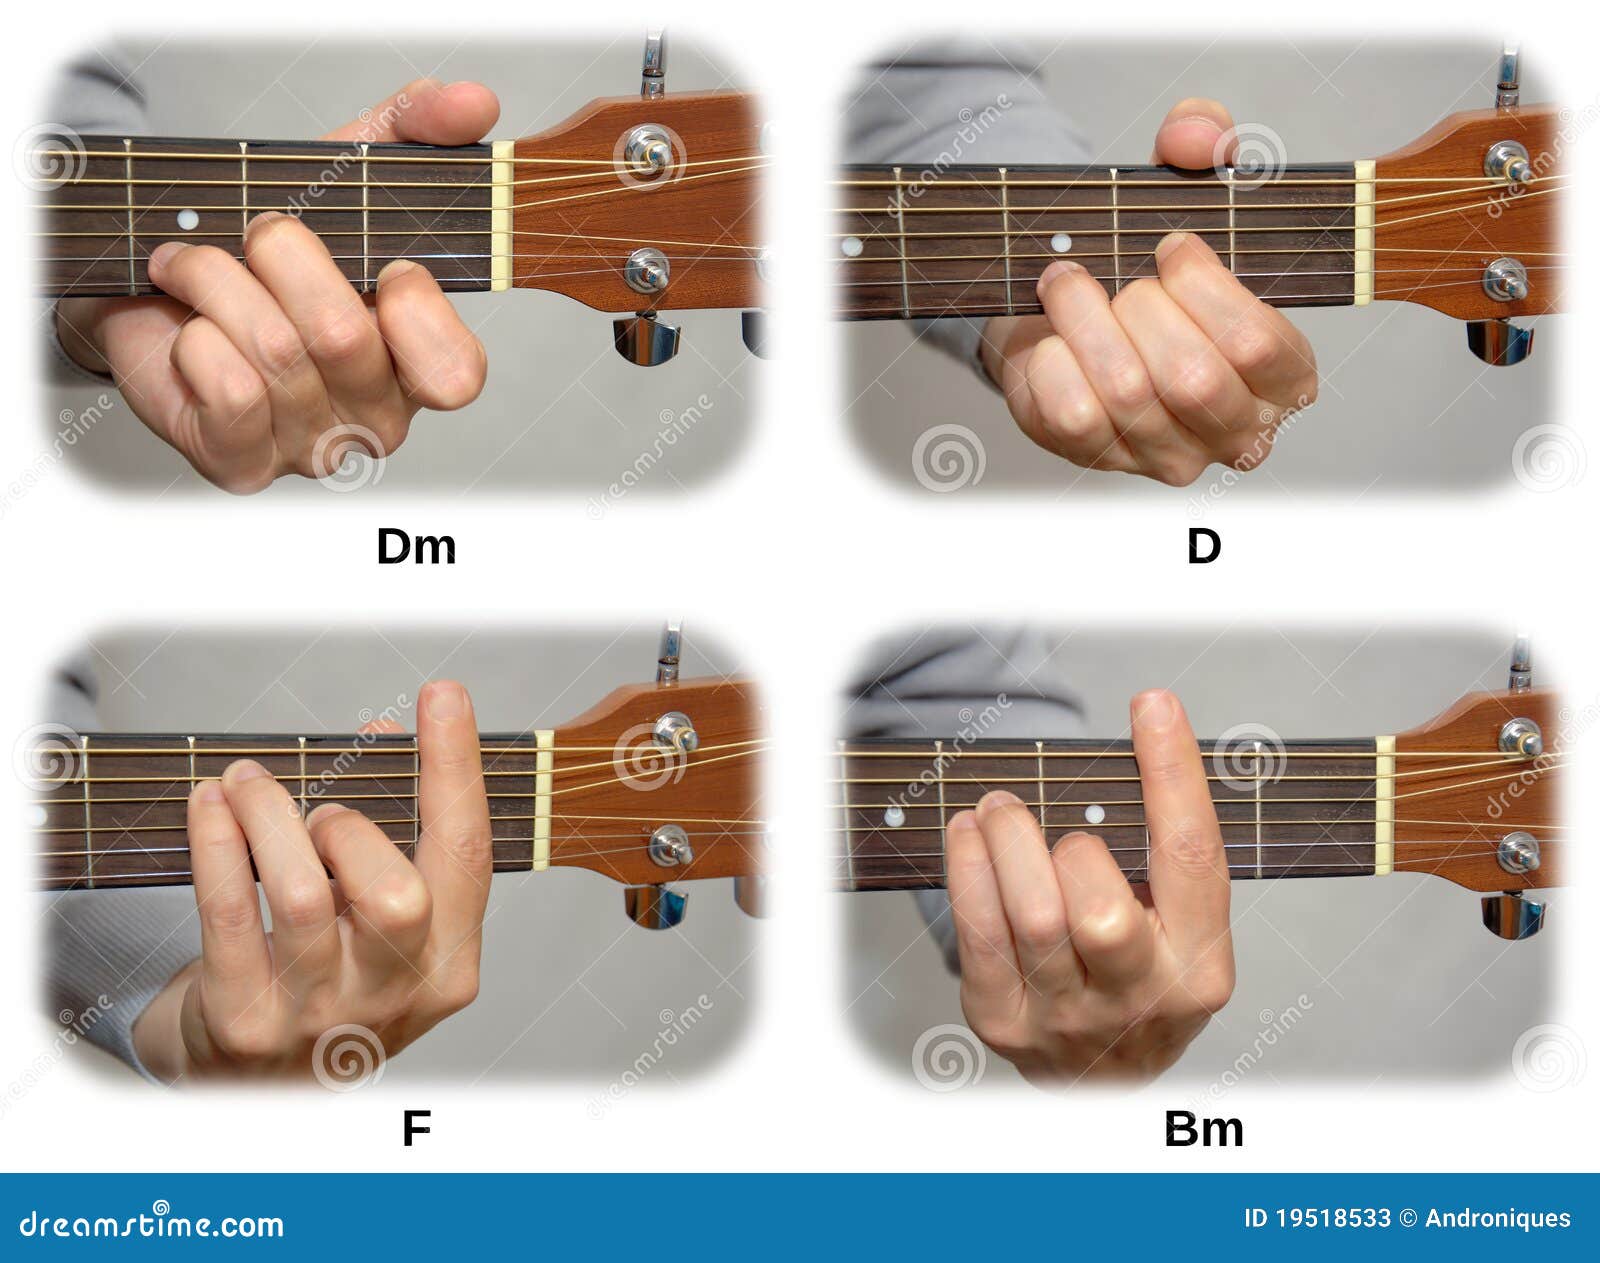 Гитара 7 струн Аккорд BM. Аккорд дм на гитаре 6 струн пальцы. DM БАРРЭ Аккорд на гитаре. Аккорд DM на грифе гитаре 6 струн варианты.